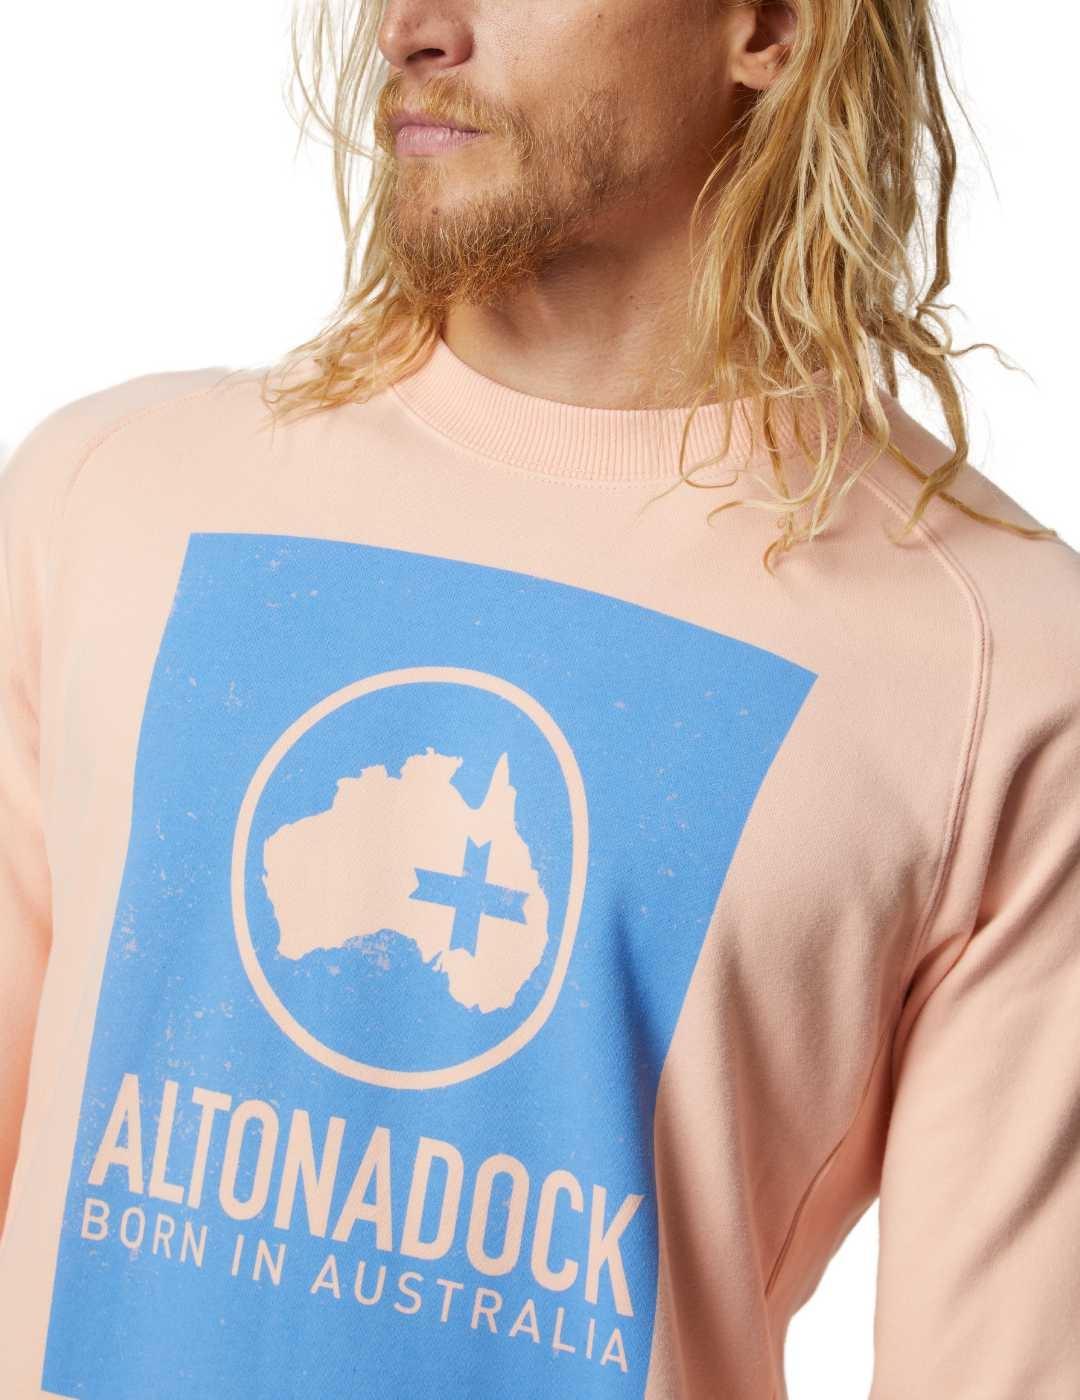 Sudadera Altonadock salmón logo azul cuello redondo hombre